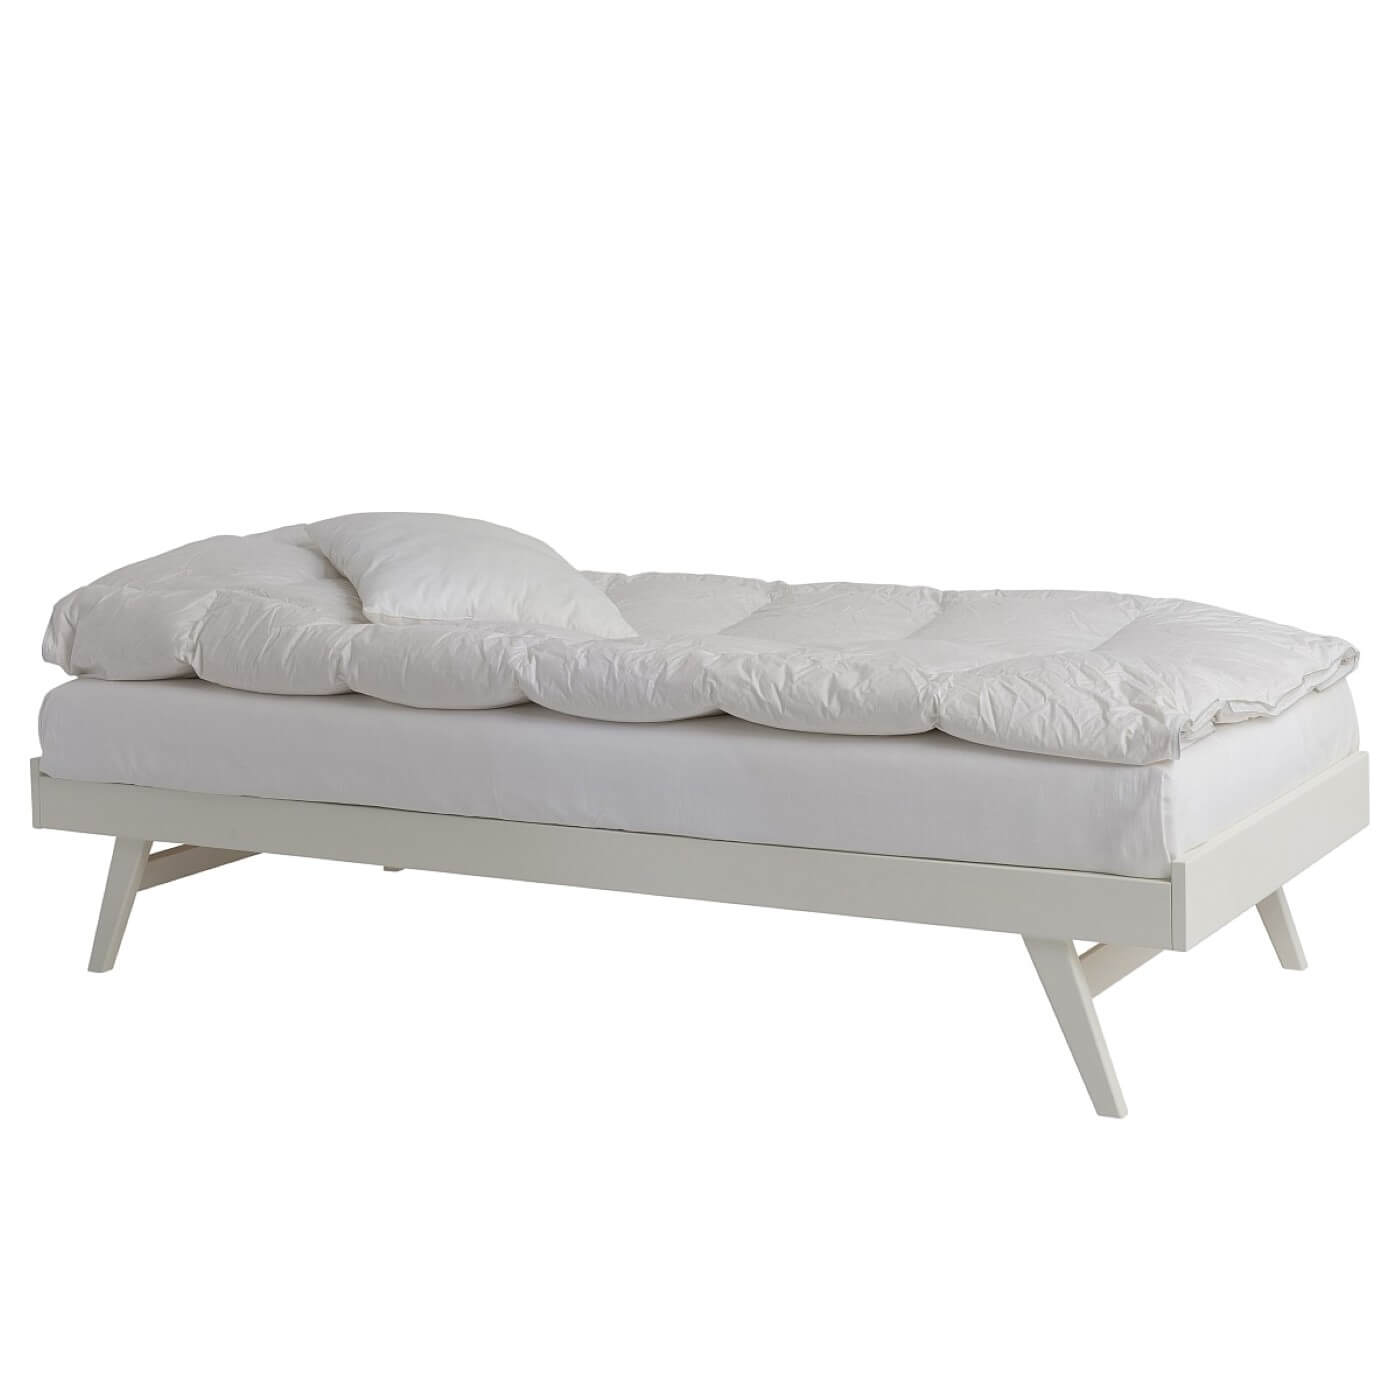 Łóżko na nóżkach NOTTE białe. Łóżko drewniane białe 90x200 z materacem i białą pościelą widoczne w całości. Skandynawski design